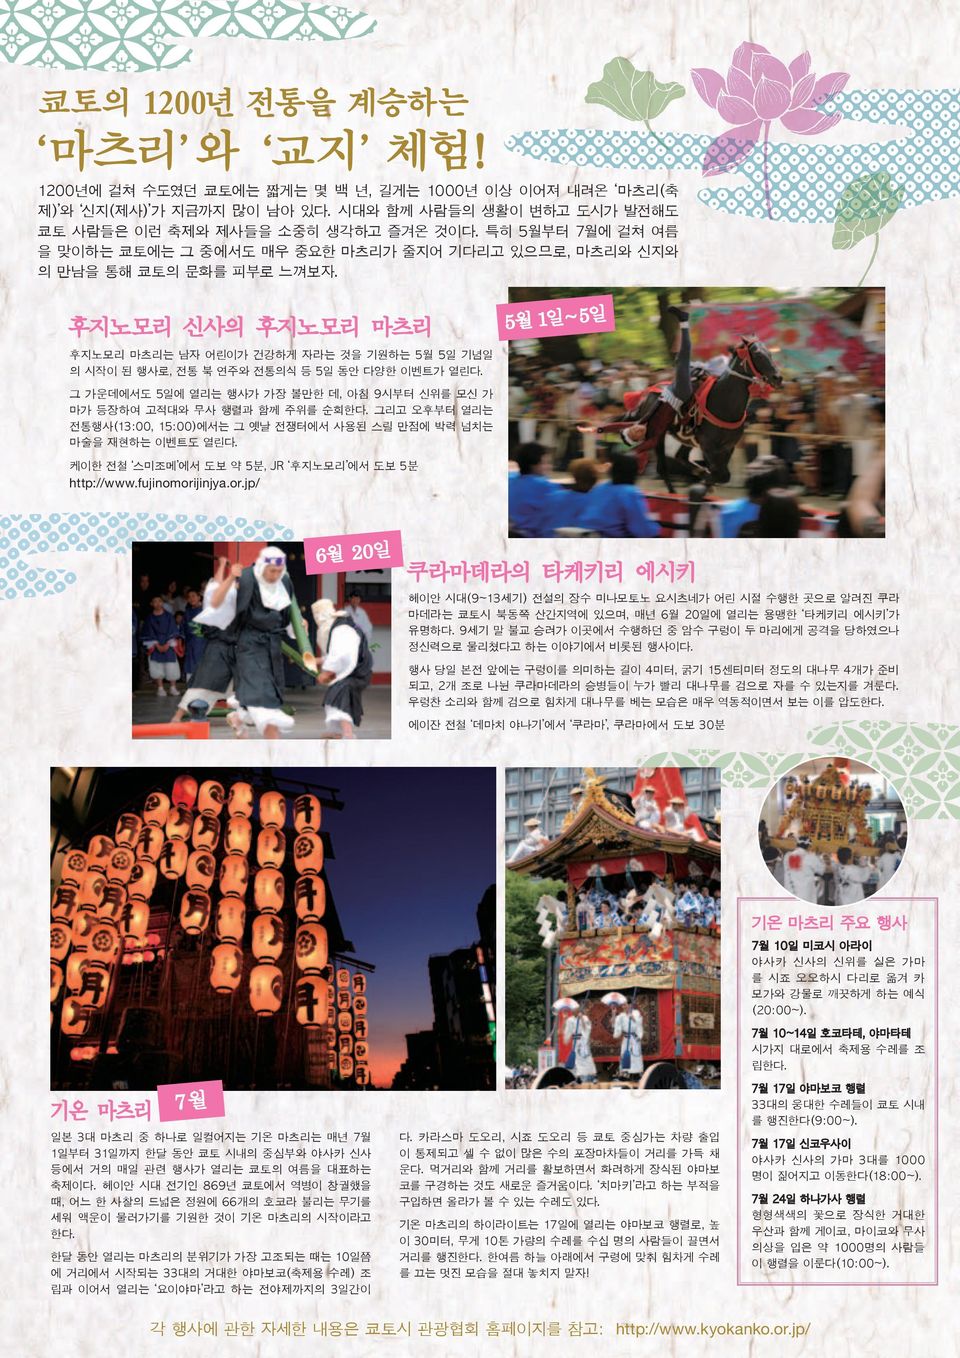 후지노모리 신사의 후지노모리 마츠리 후지노모리 마츠리는 남자 어린이가 건강하게 자라는 것을 기원하는 5월 5일 기념일 의 시작이 된 행사로, 전통 북 연주와 전통의식 등 5일 동안 다양한 이벤트가 열린다.